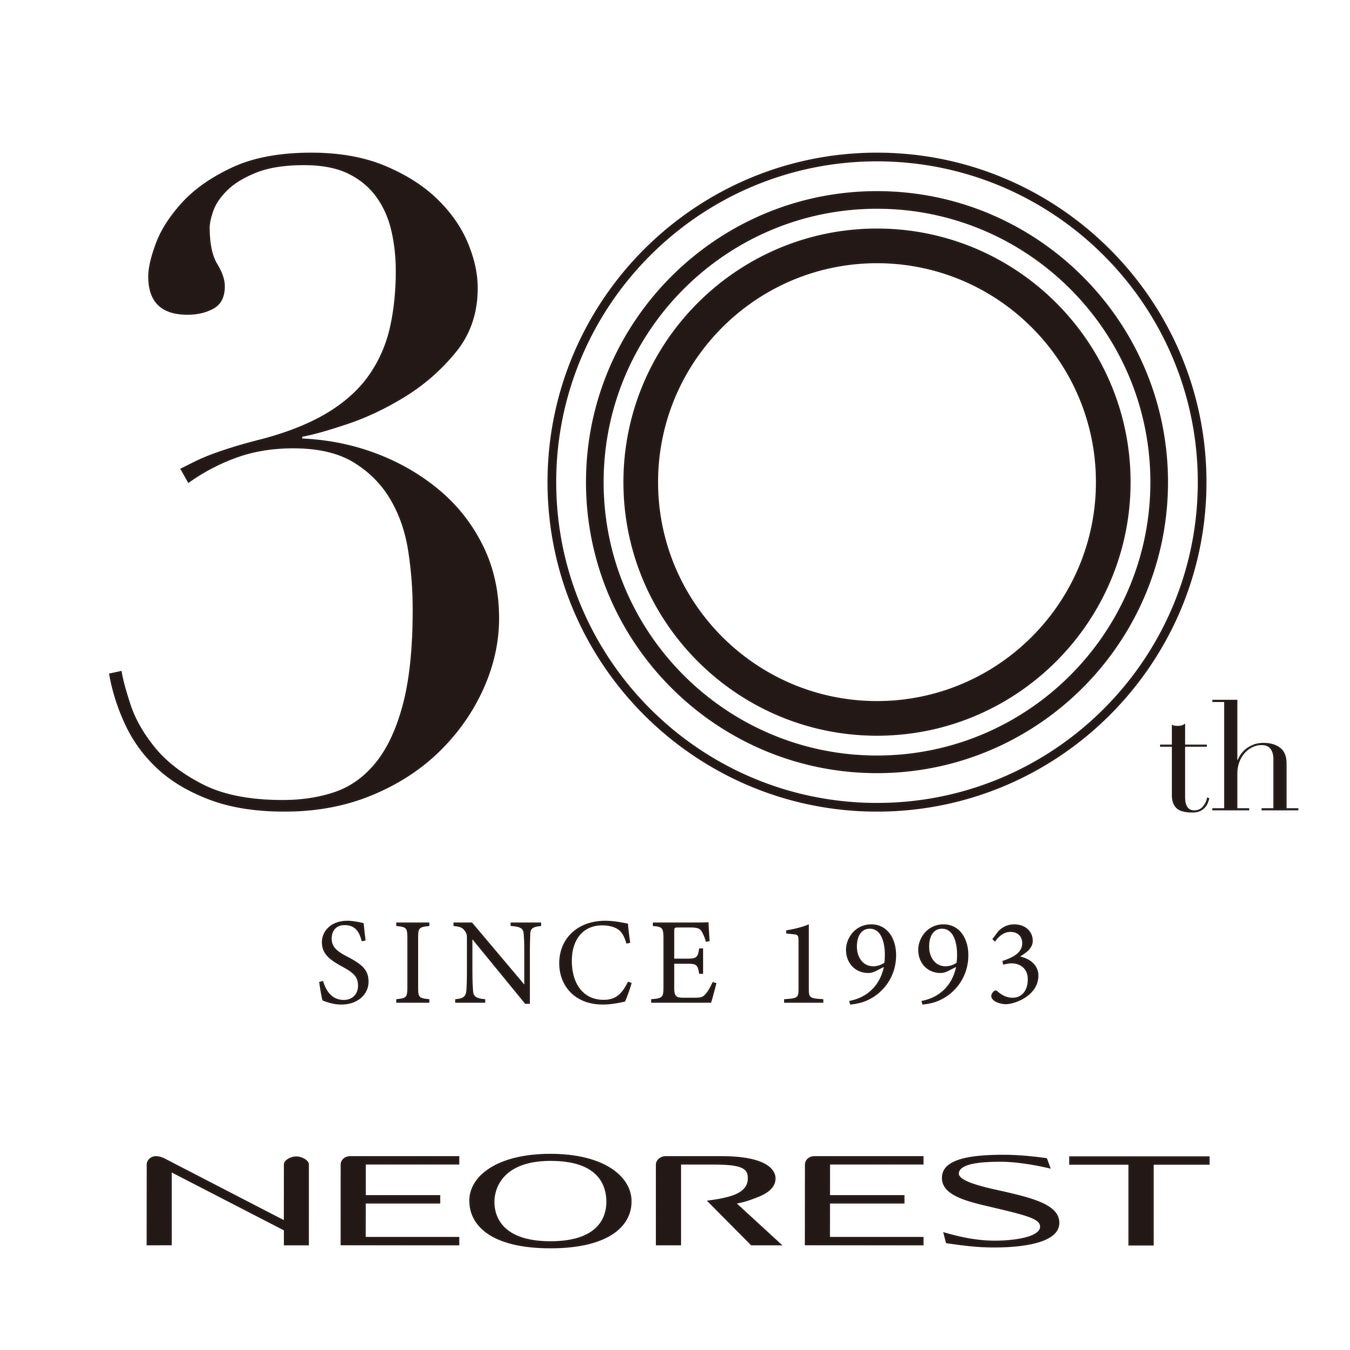 TOTOトイレの最上位シリーズ「ネオレスト」発売30周年のサブ画像1_ネオレスト30周年ロゴ